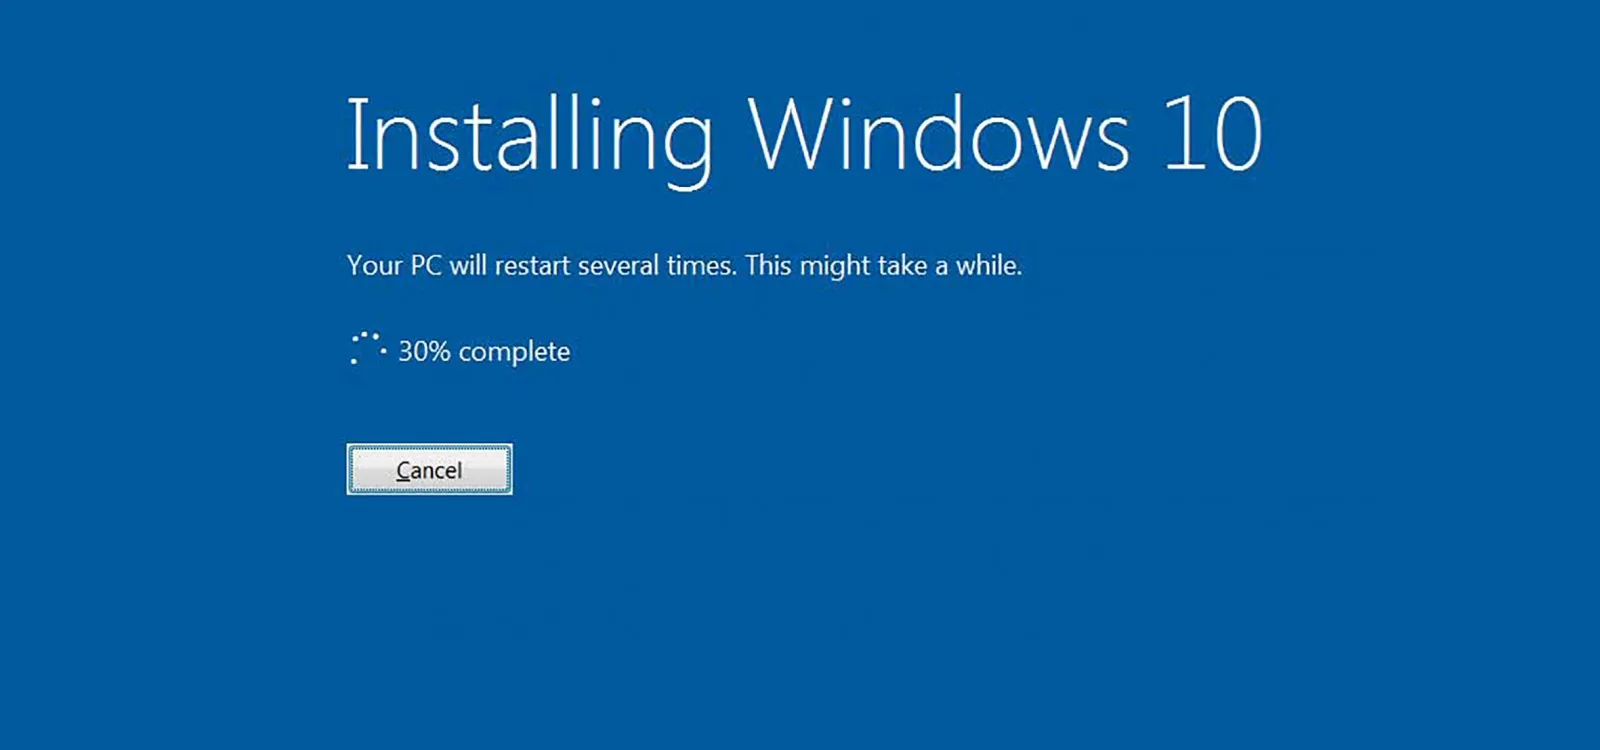 Vẫn có thể update Windows 10 miễn phí trên Windows 7, 8.1